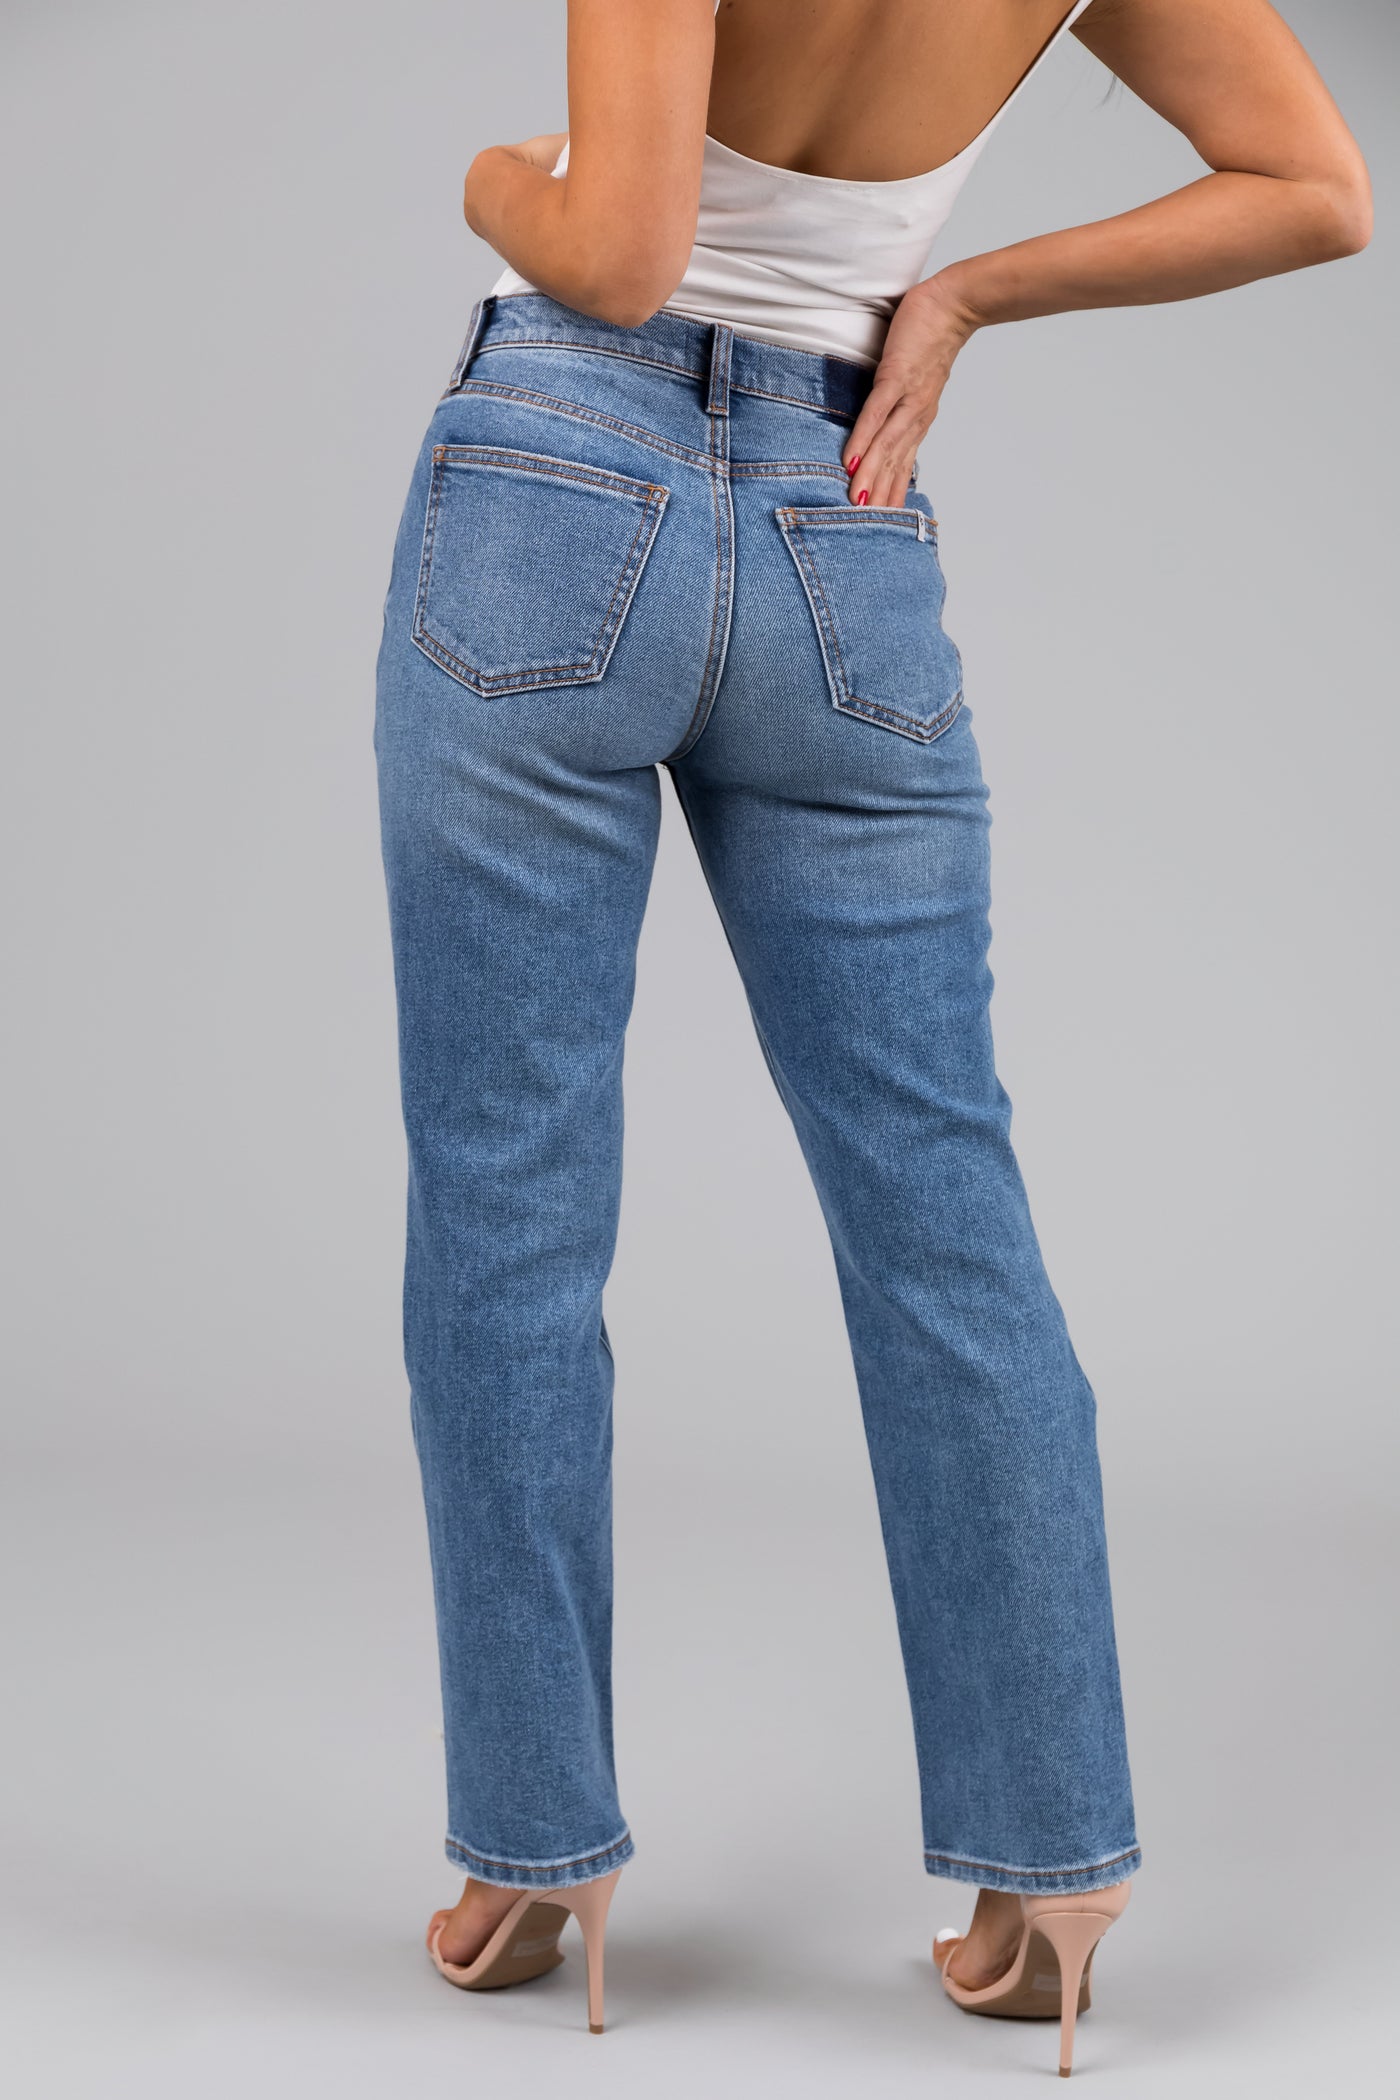 Sneak Peek Medium Wash High Rise Distressed Knee Jeans